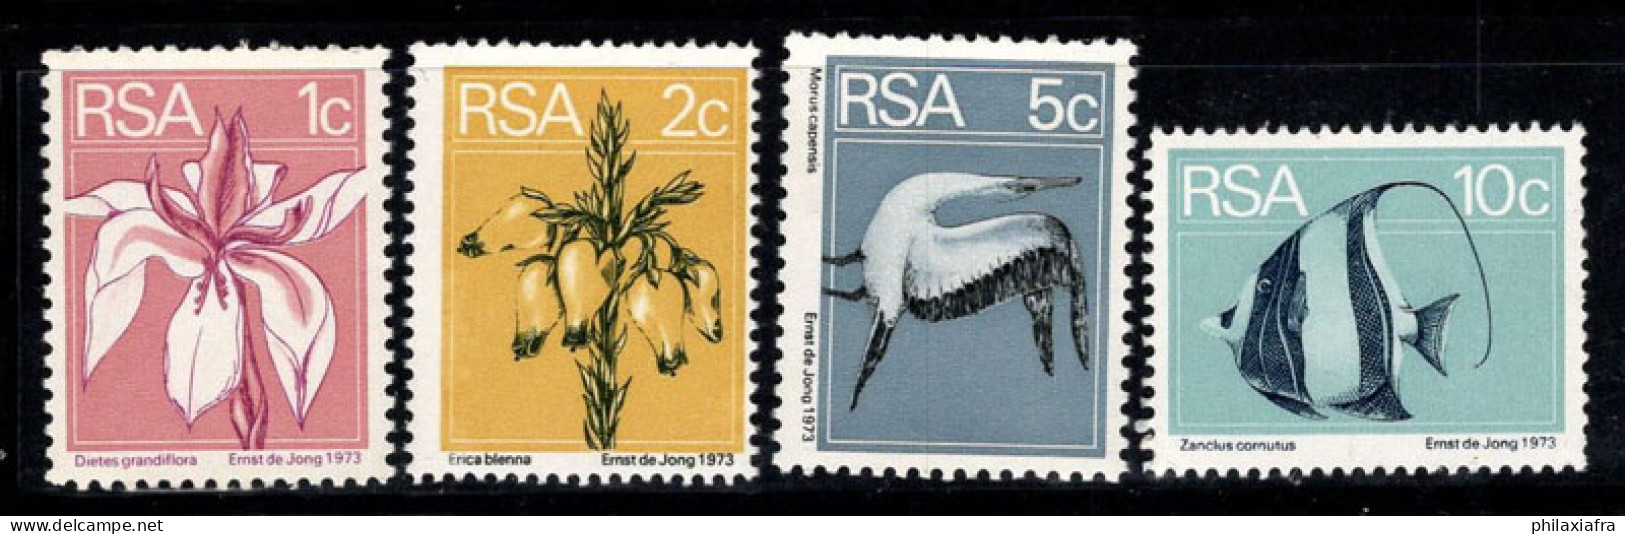 Afrique Du Sud 1974 Mi. 463A-466A Neuf ** 100% Flore Et Faune, Poissons, Fleurs - Nuovi